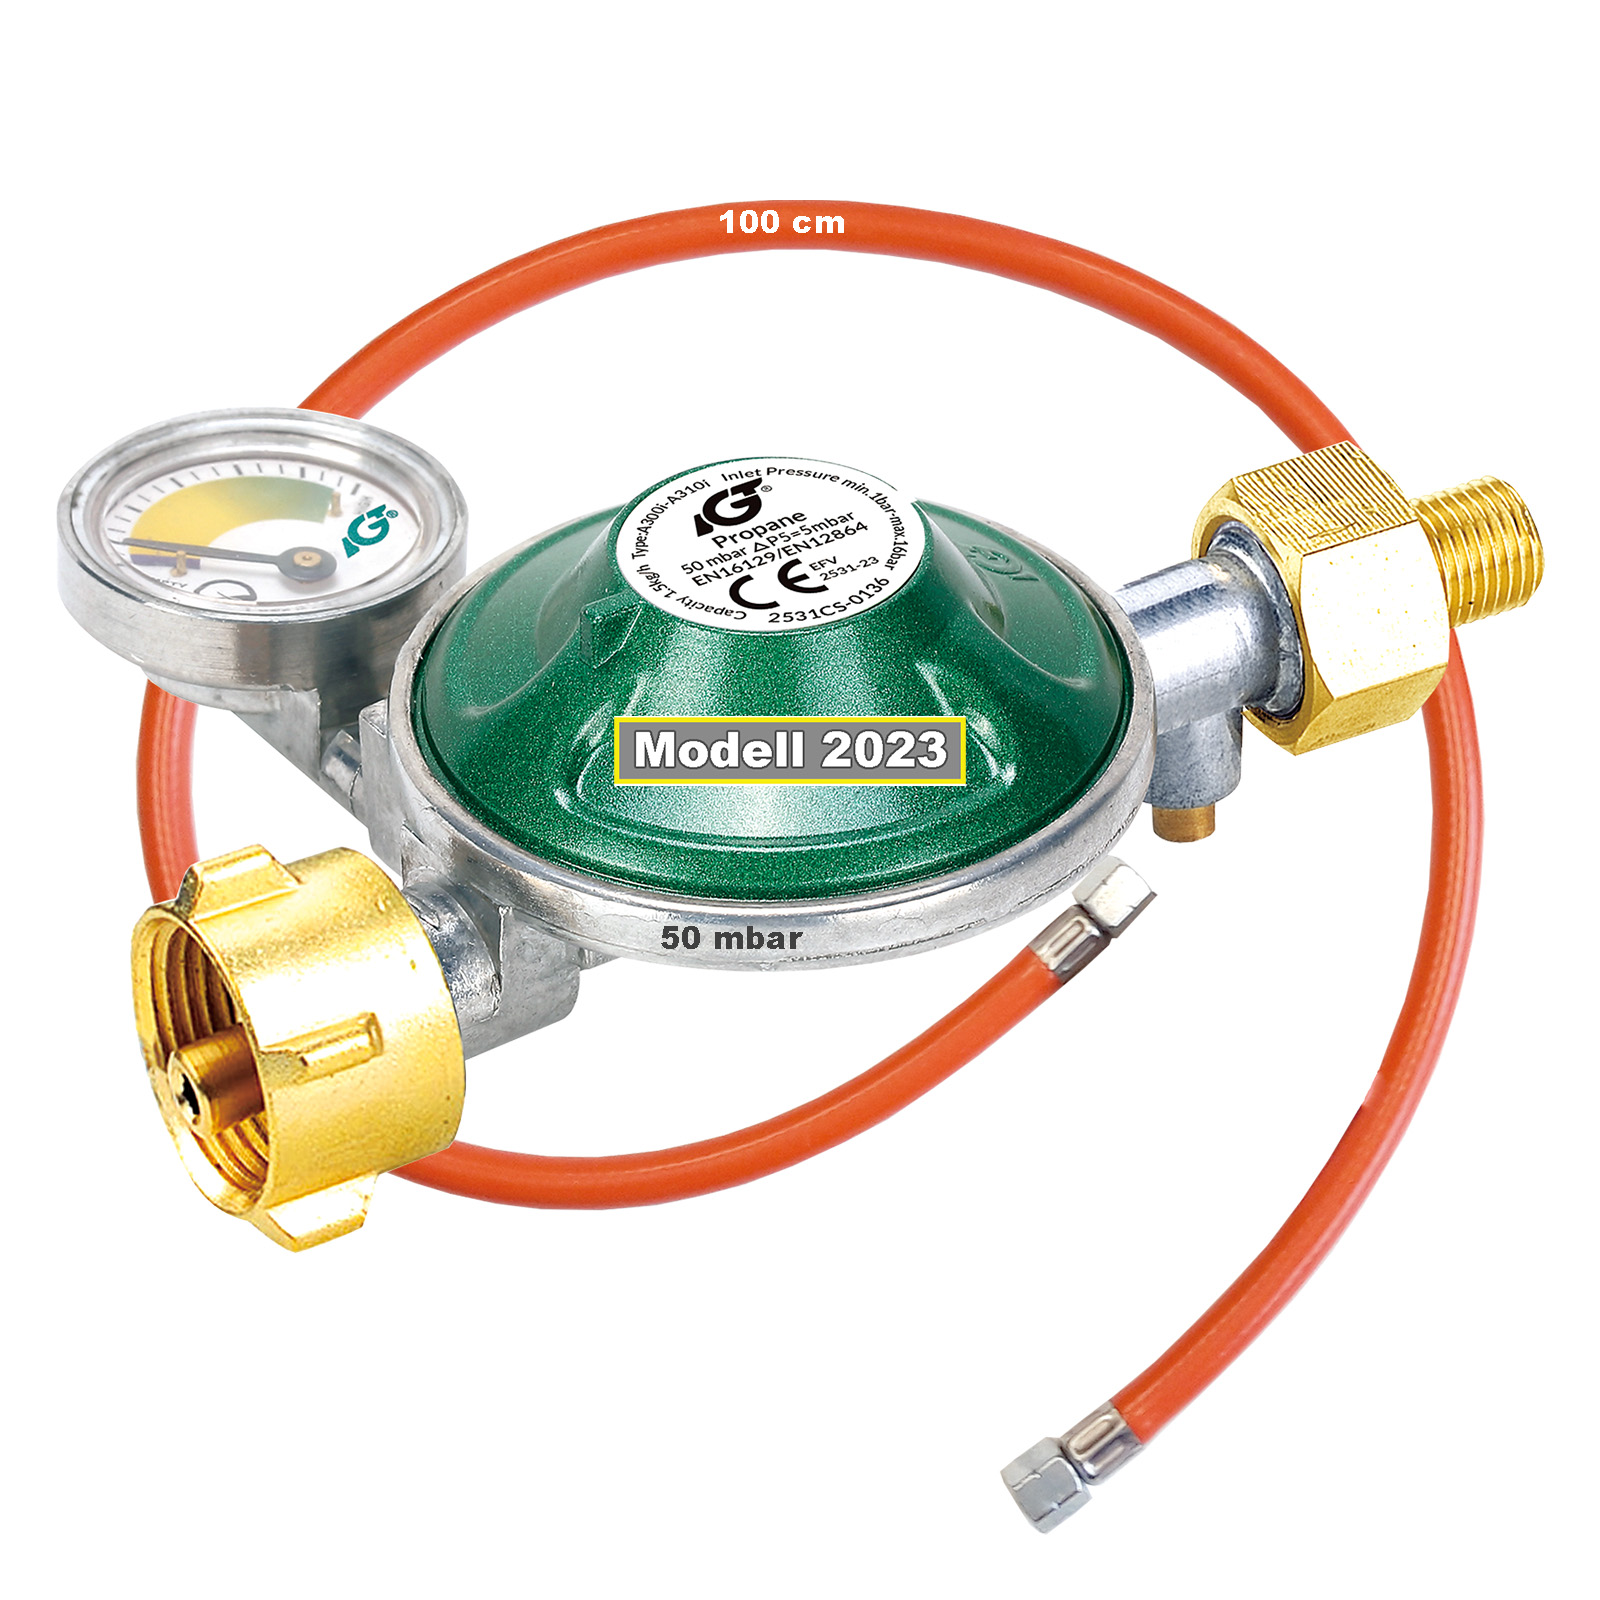 Gasregler Druckminderer 50 mbar mit Manometer  und Gas-Füllstandsanzeige | Gasschlauch 100cm | inkl. 2 in 1 Gasregler-Schlüssel